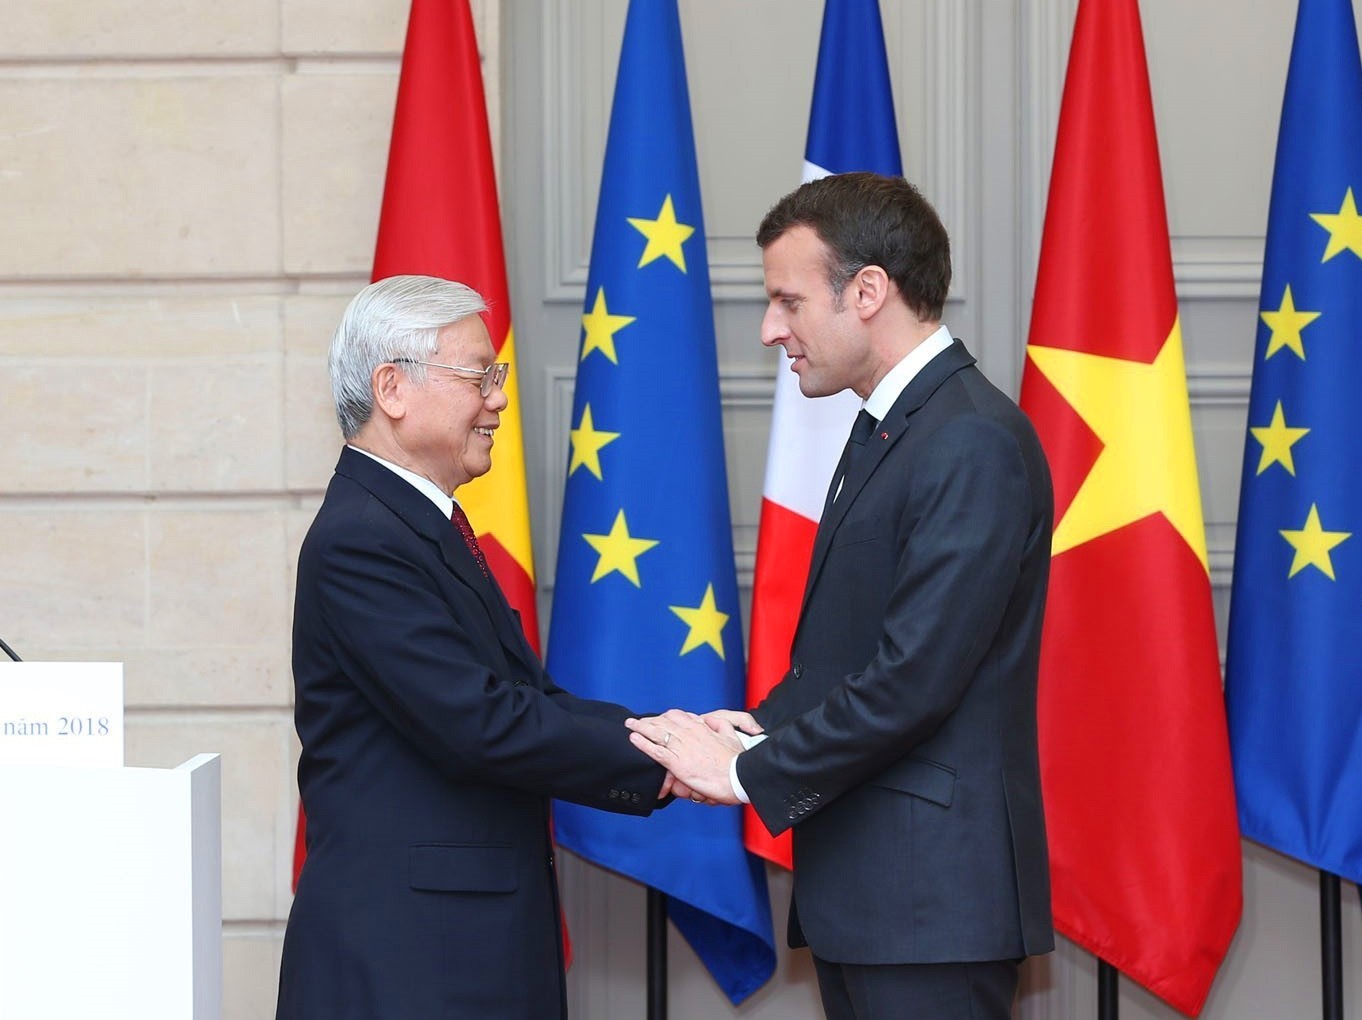 Đại sứ Olivier Brochet: Pháp sẵn sàng đồng hành với Việt Nam thực hiện chuyển đổi xanh